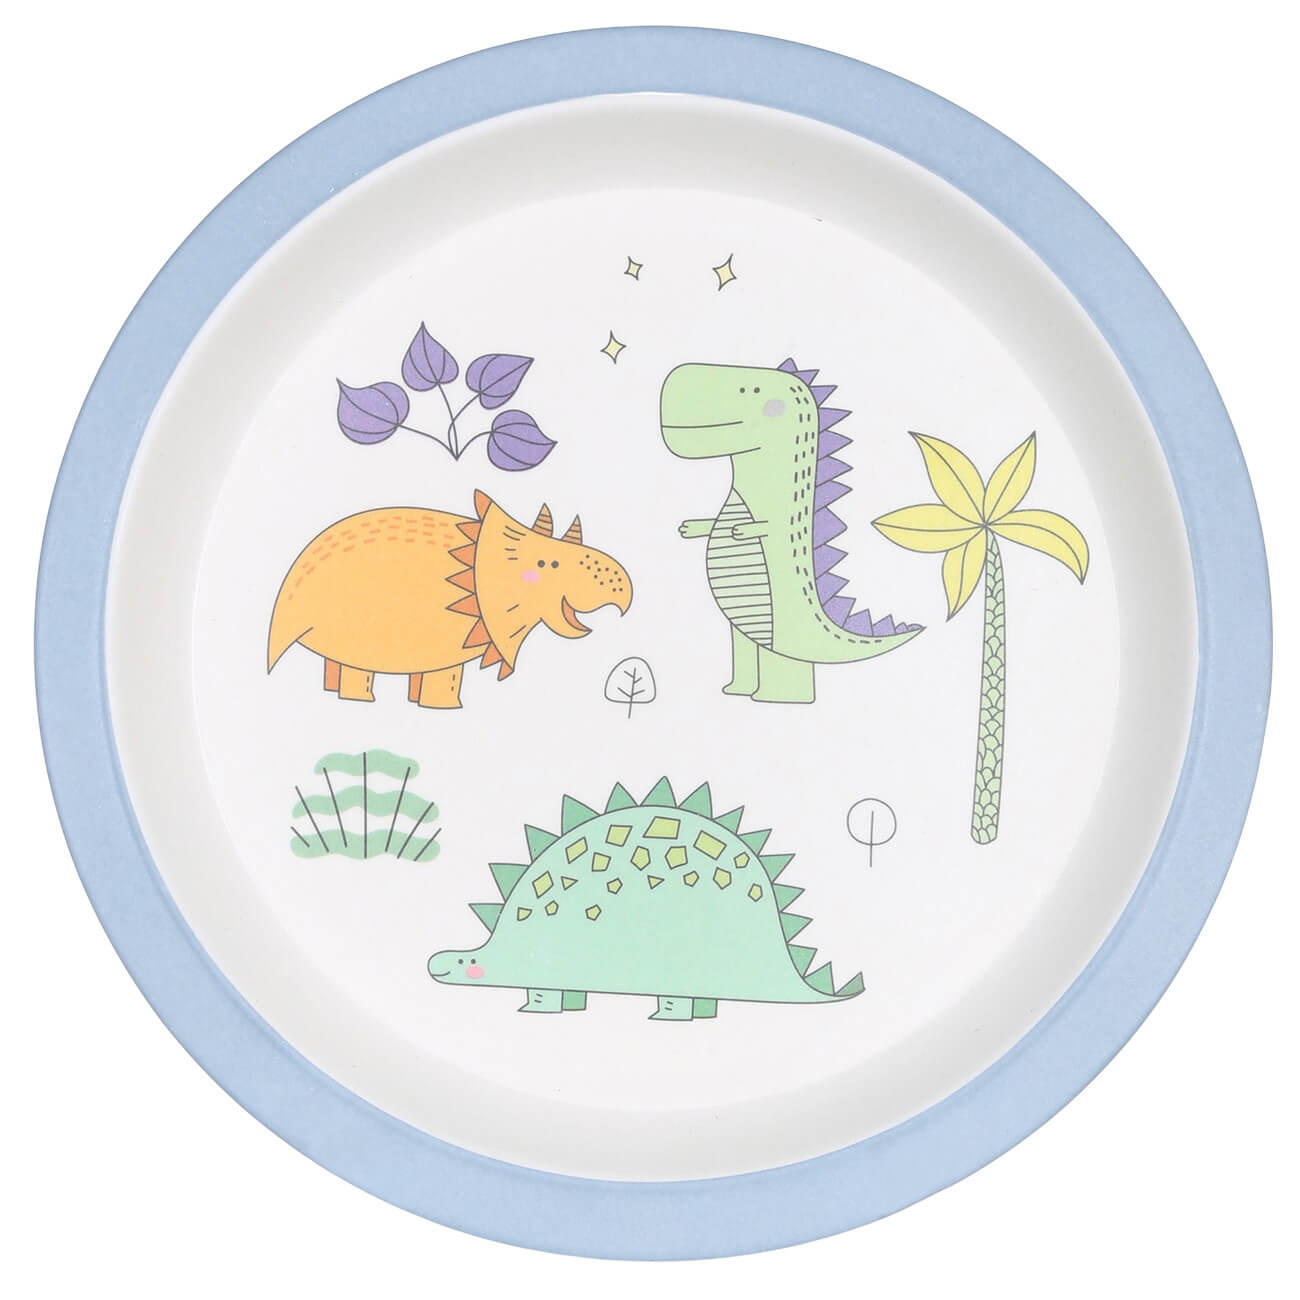 Тарелка закусочная, детская, 21 см, бамбук, голубая, Динозавр, Dino тарелка закусочная детская 21 см бамбук розовая единорог и радуга unicorn